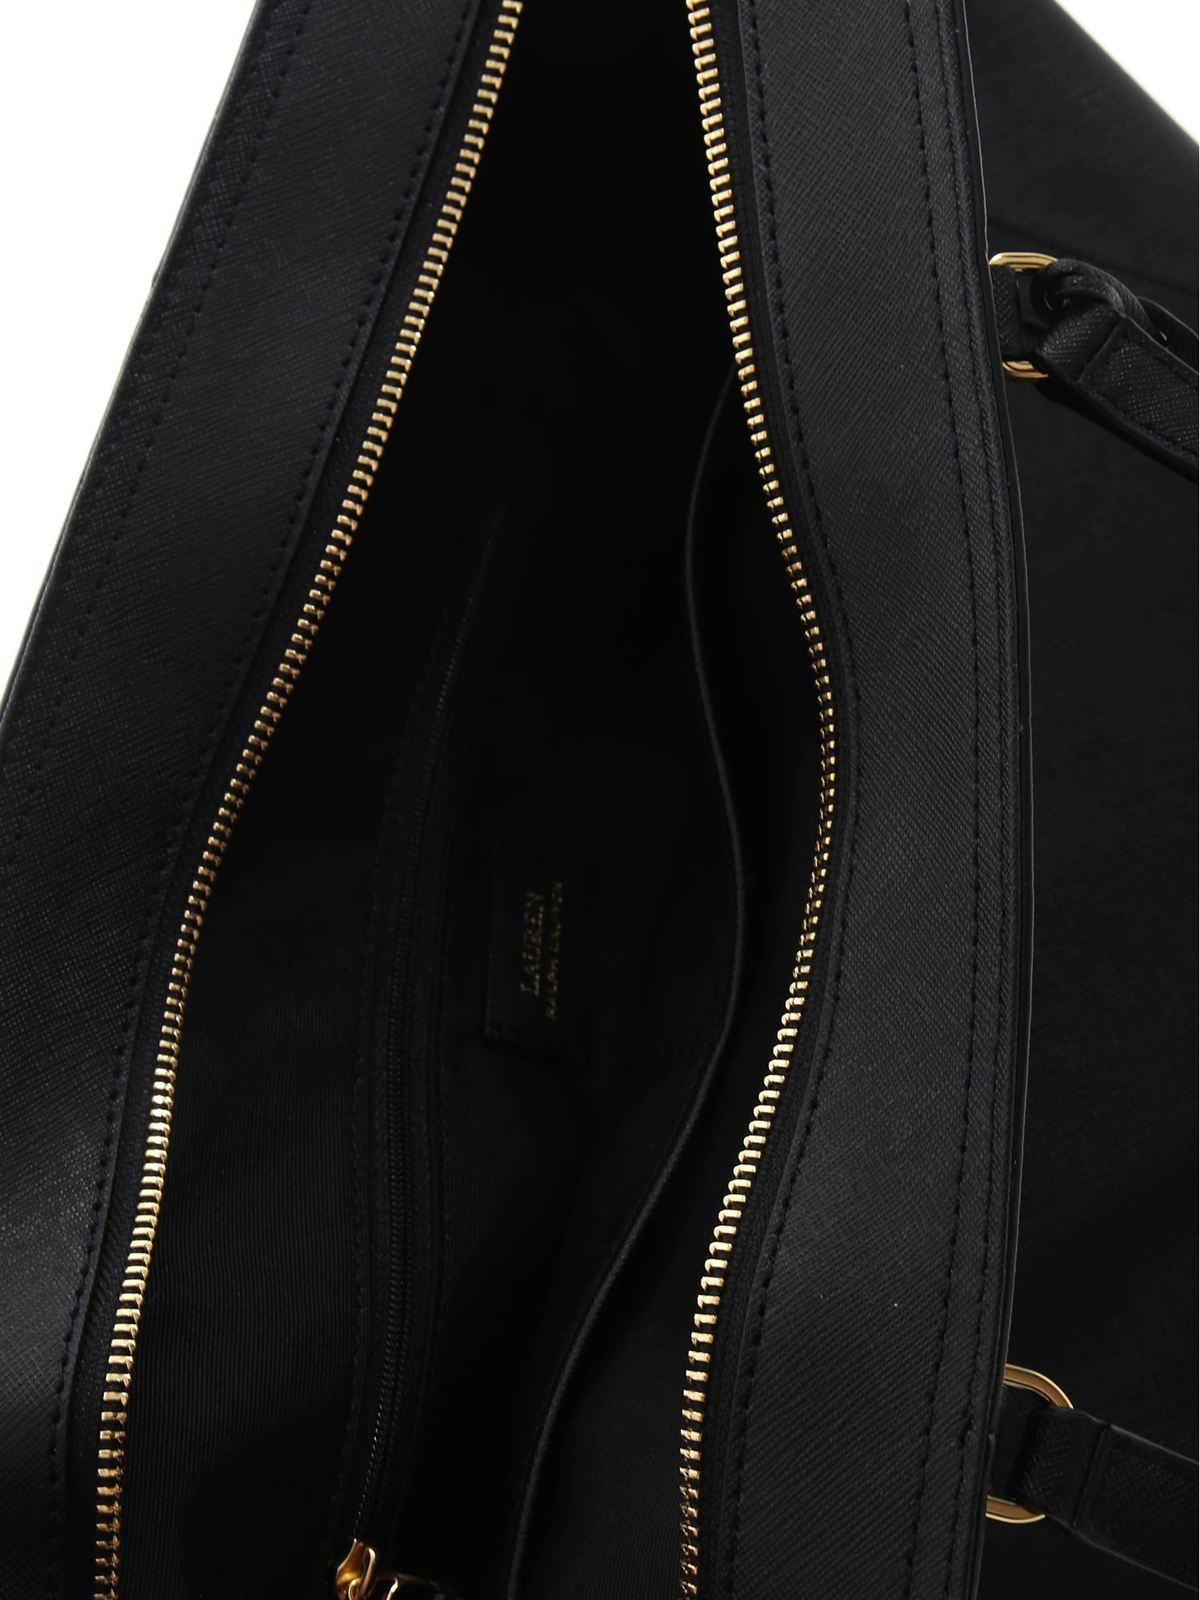 Totes bags Lauren Ralph Lauren - Saffiano shoulder bag in black -  431842430001